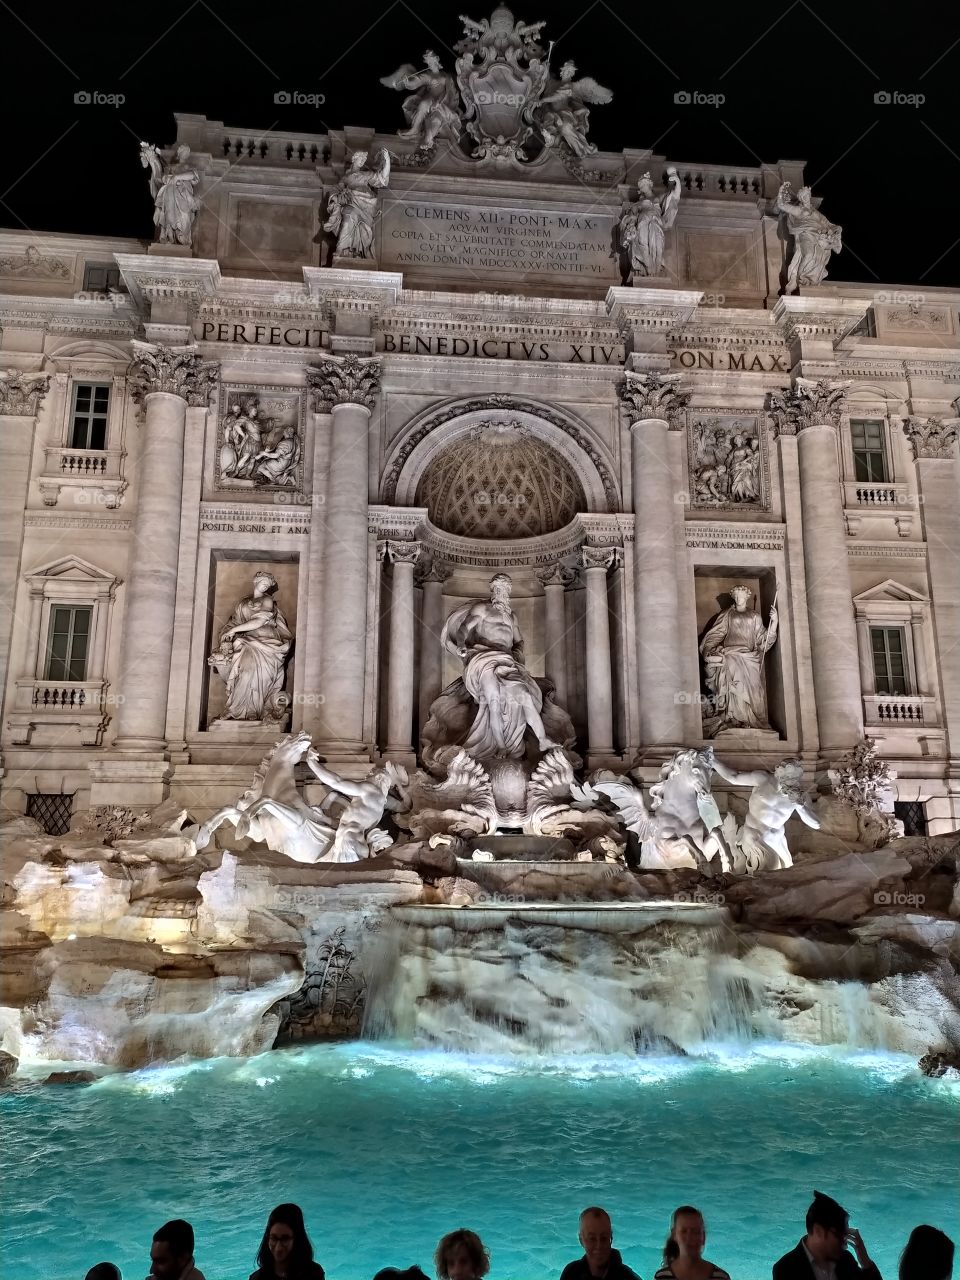 expplendor e impresionante Roma con su gran monumento como la Fontana di Trevi hasta llegar al imperioso Coloseo